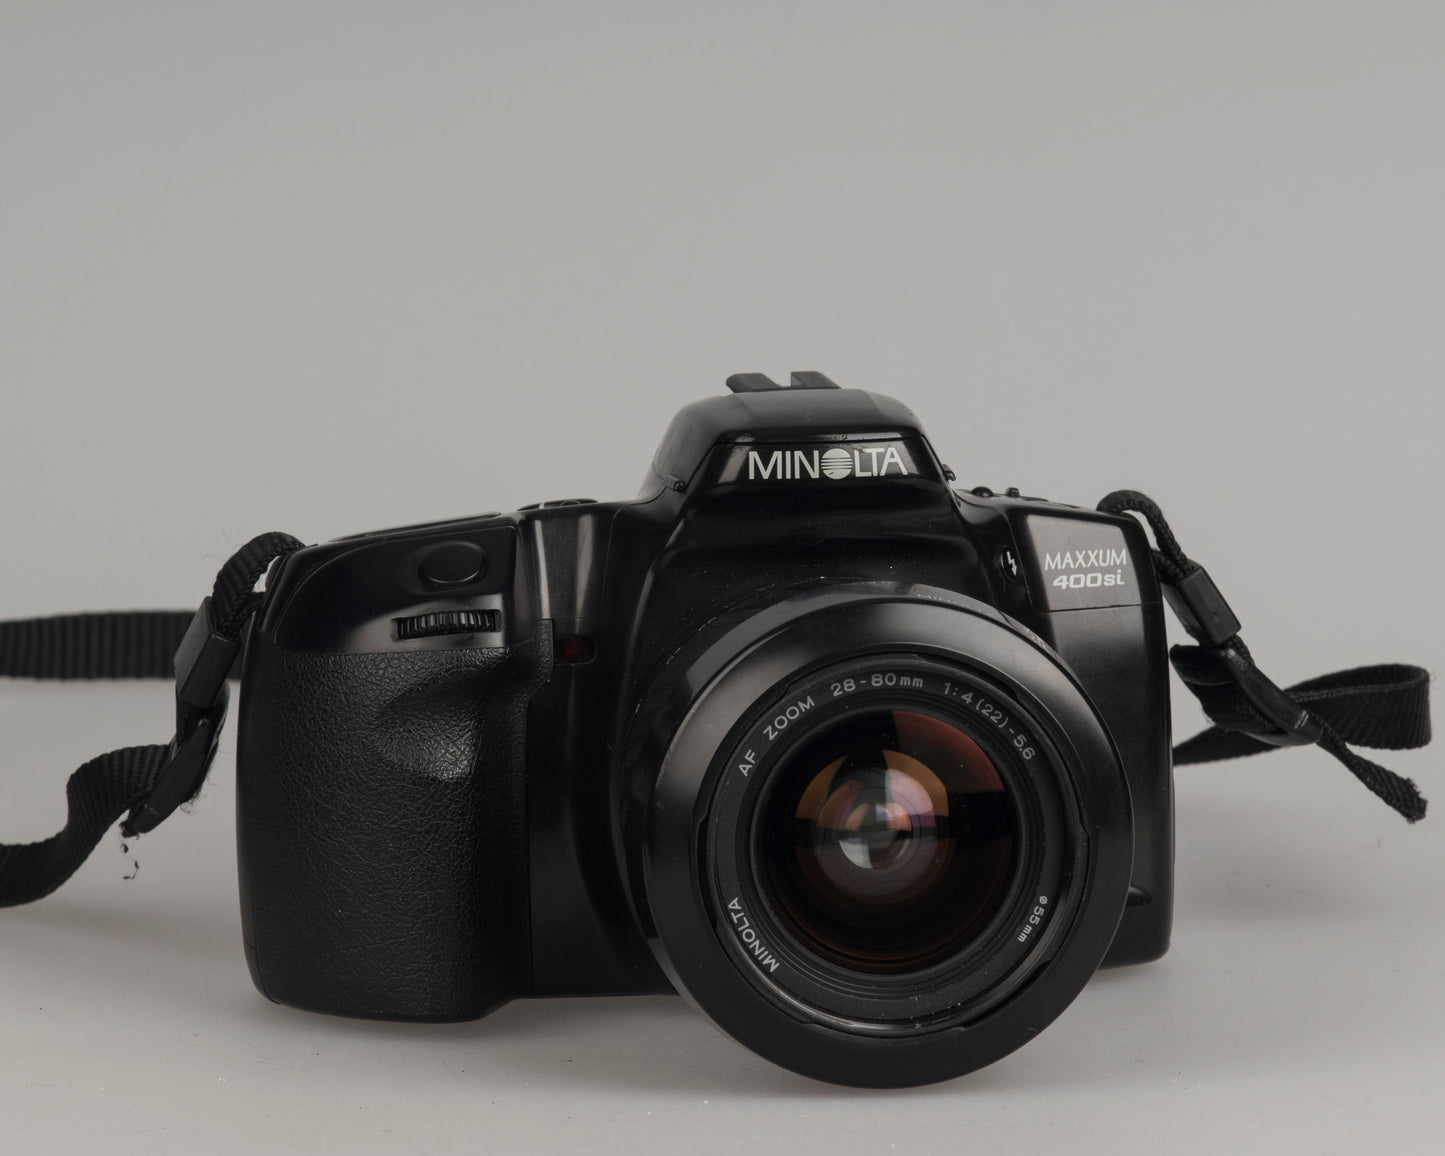 Minolta Maxxum 400si 35mm film SLR camera featuring a 28-80mm lens; front left view